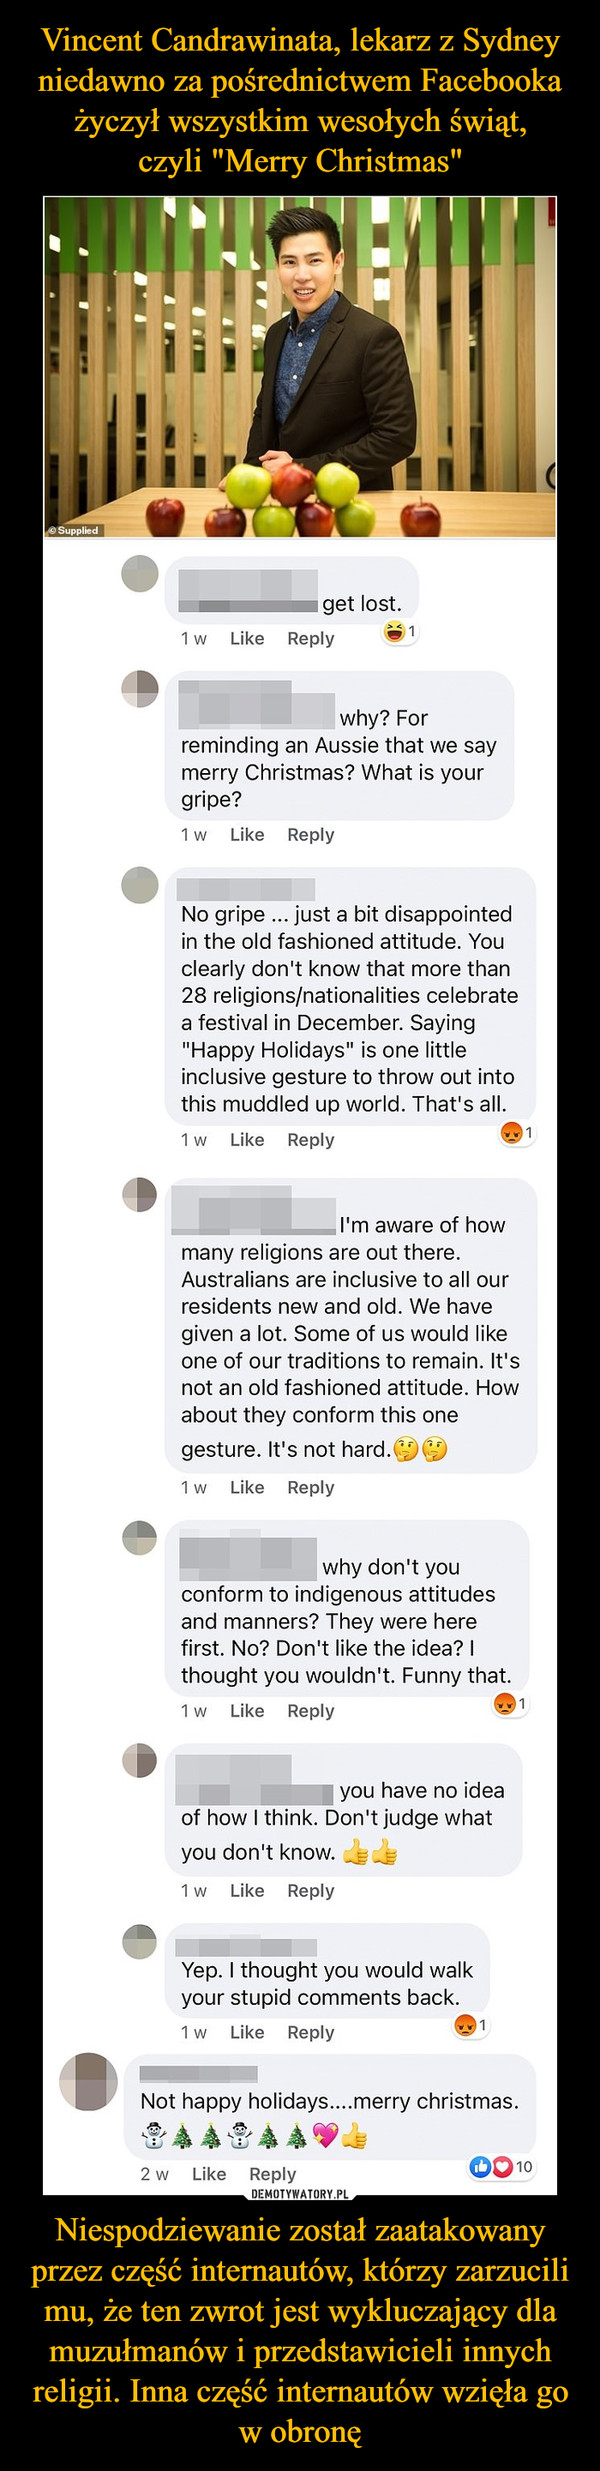 Vincent Candrawinata, lekarz z Sydney niedawno za pośrednictwem Facebooka życzył wszystkim wesołych świąt,
czyli "Merry Christmas" Niespodziewanie został zaatakowany przez część internautów, którzy zarzucili mu, że ten zwrot jest wykluczający dla muzułmanów i przedstawicieli innych religii. Inna część internautów wzięła go w obronę